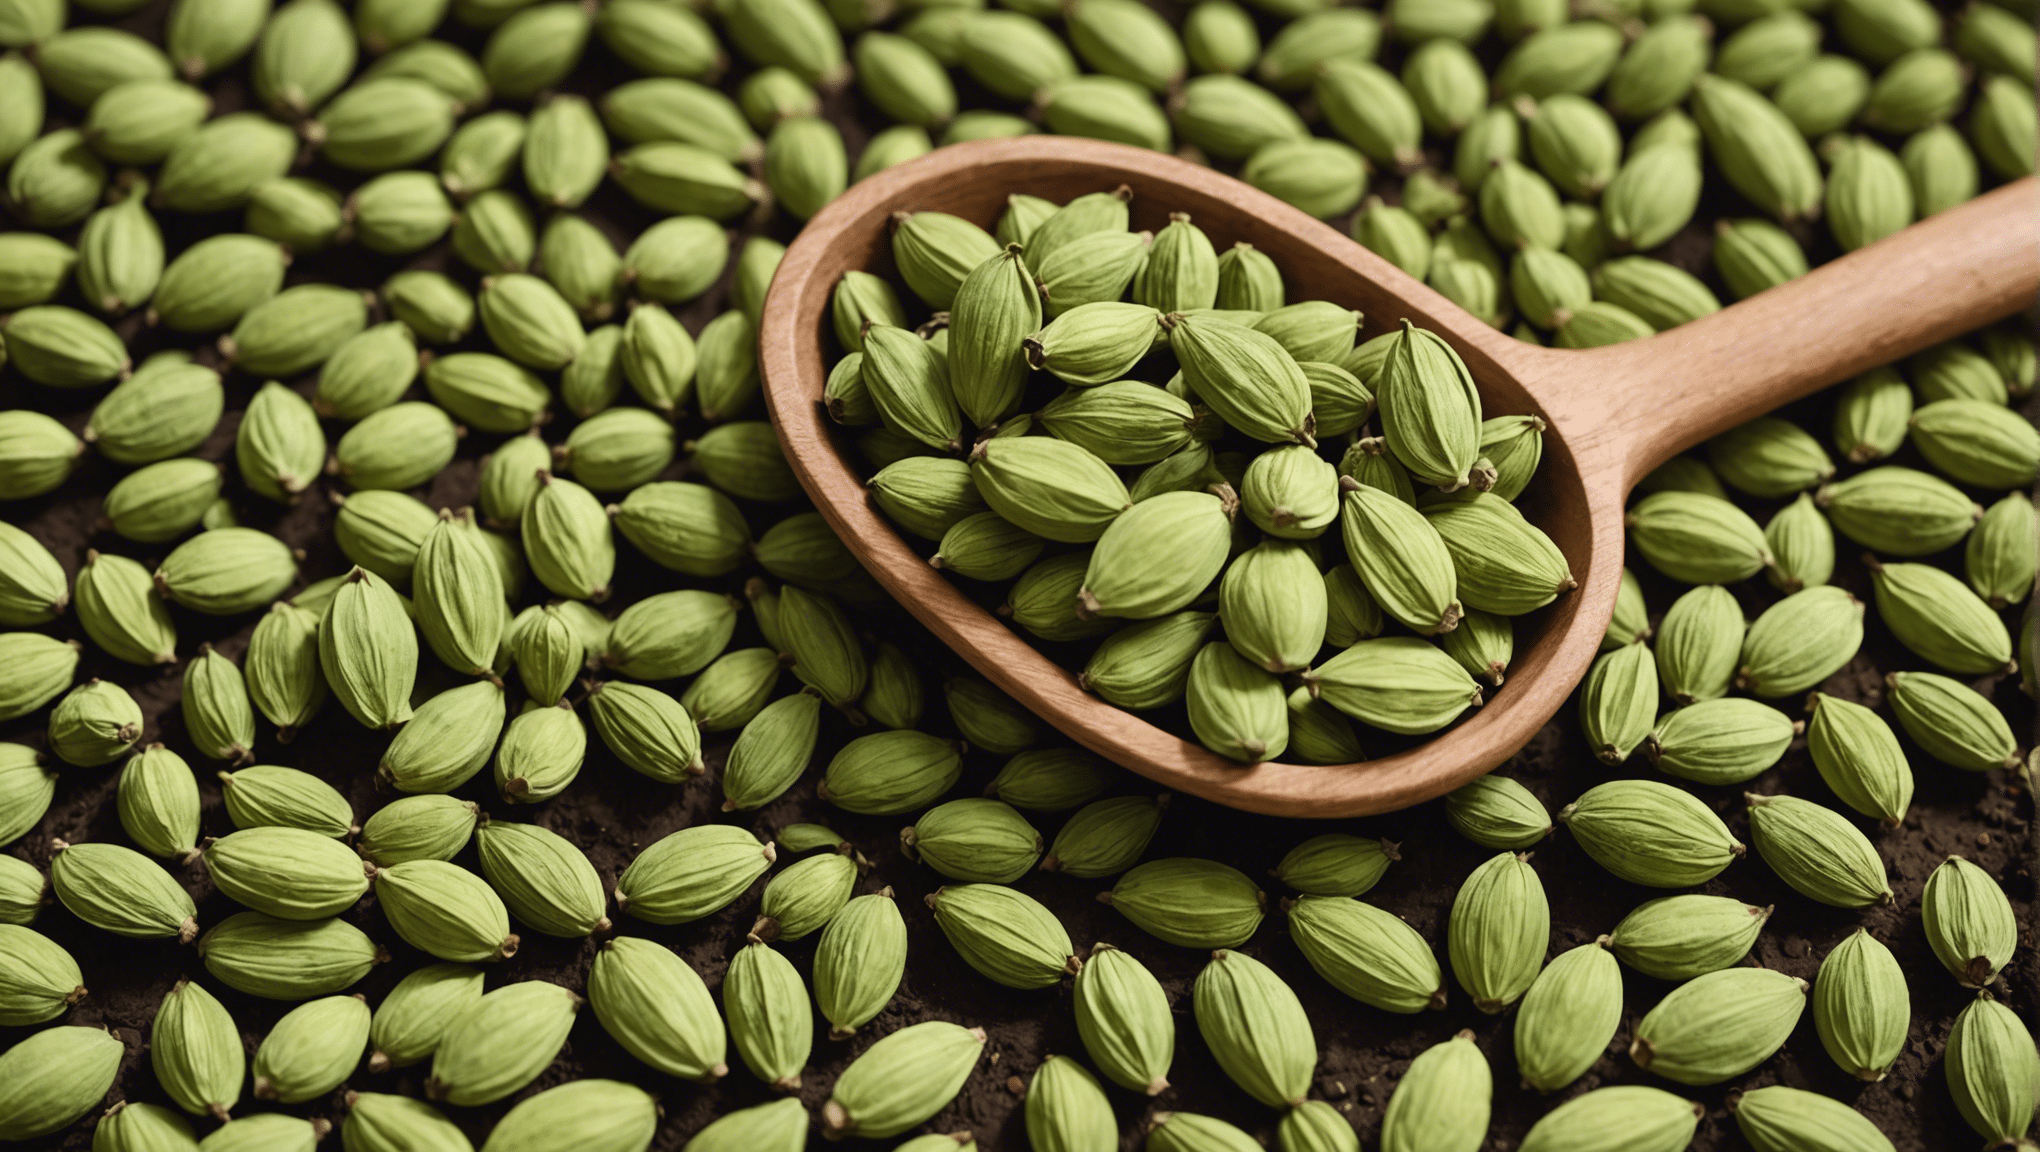 descubra os inúmeros benefícios das sementes de cardamomo e como elas podem melhorar sua saúde e bem-estar.